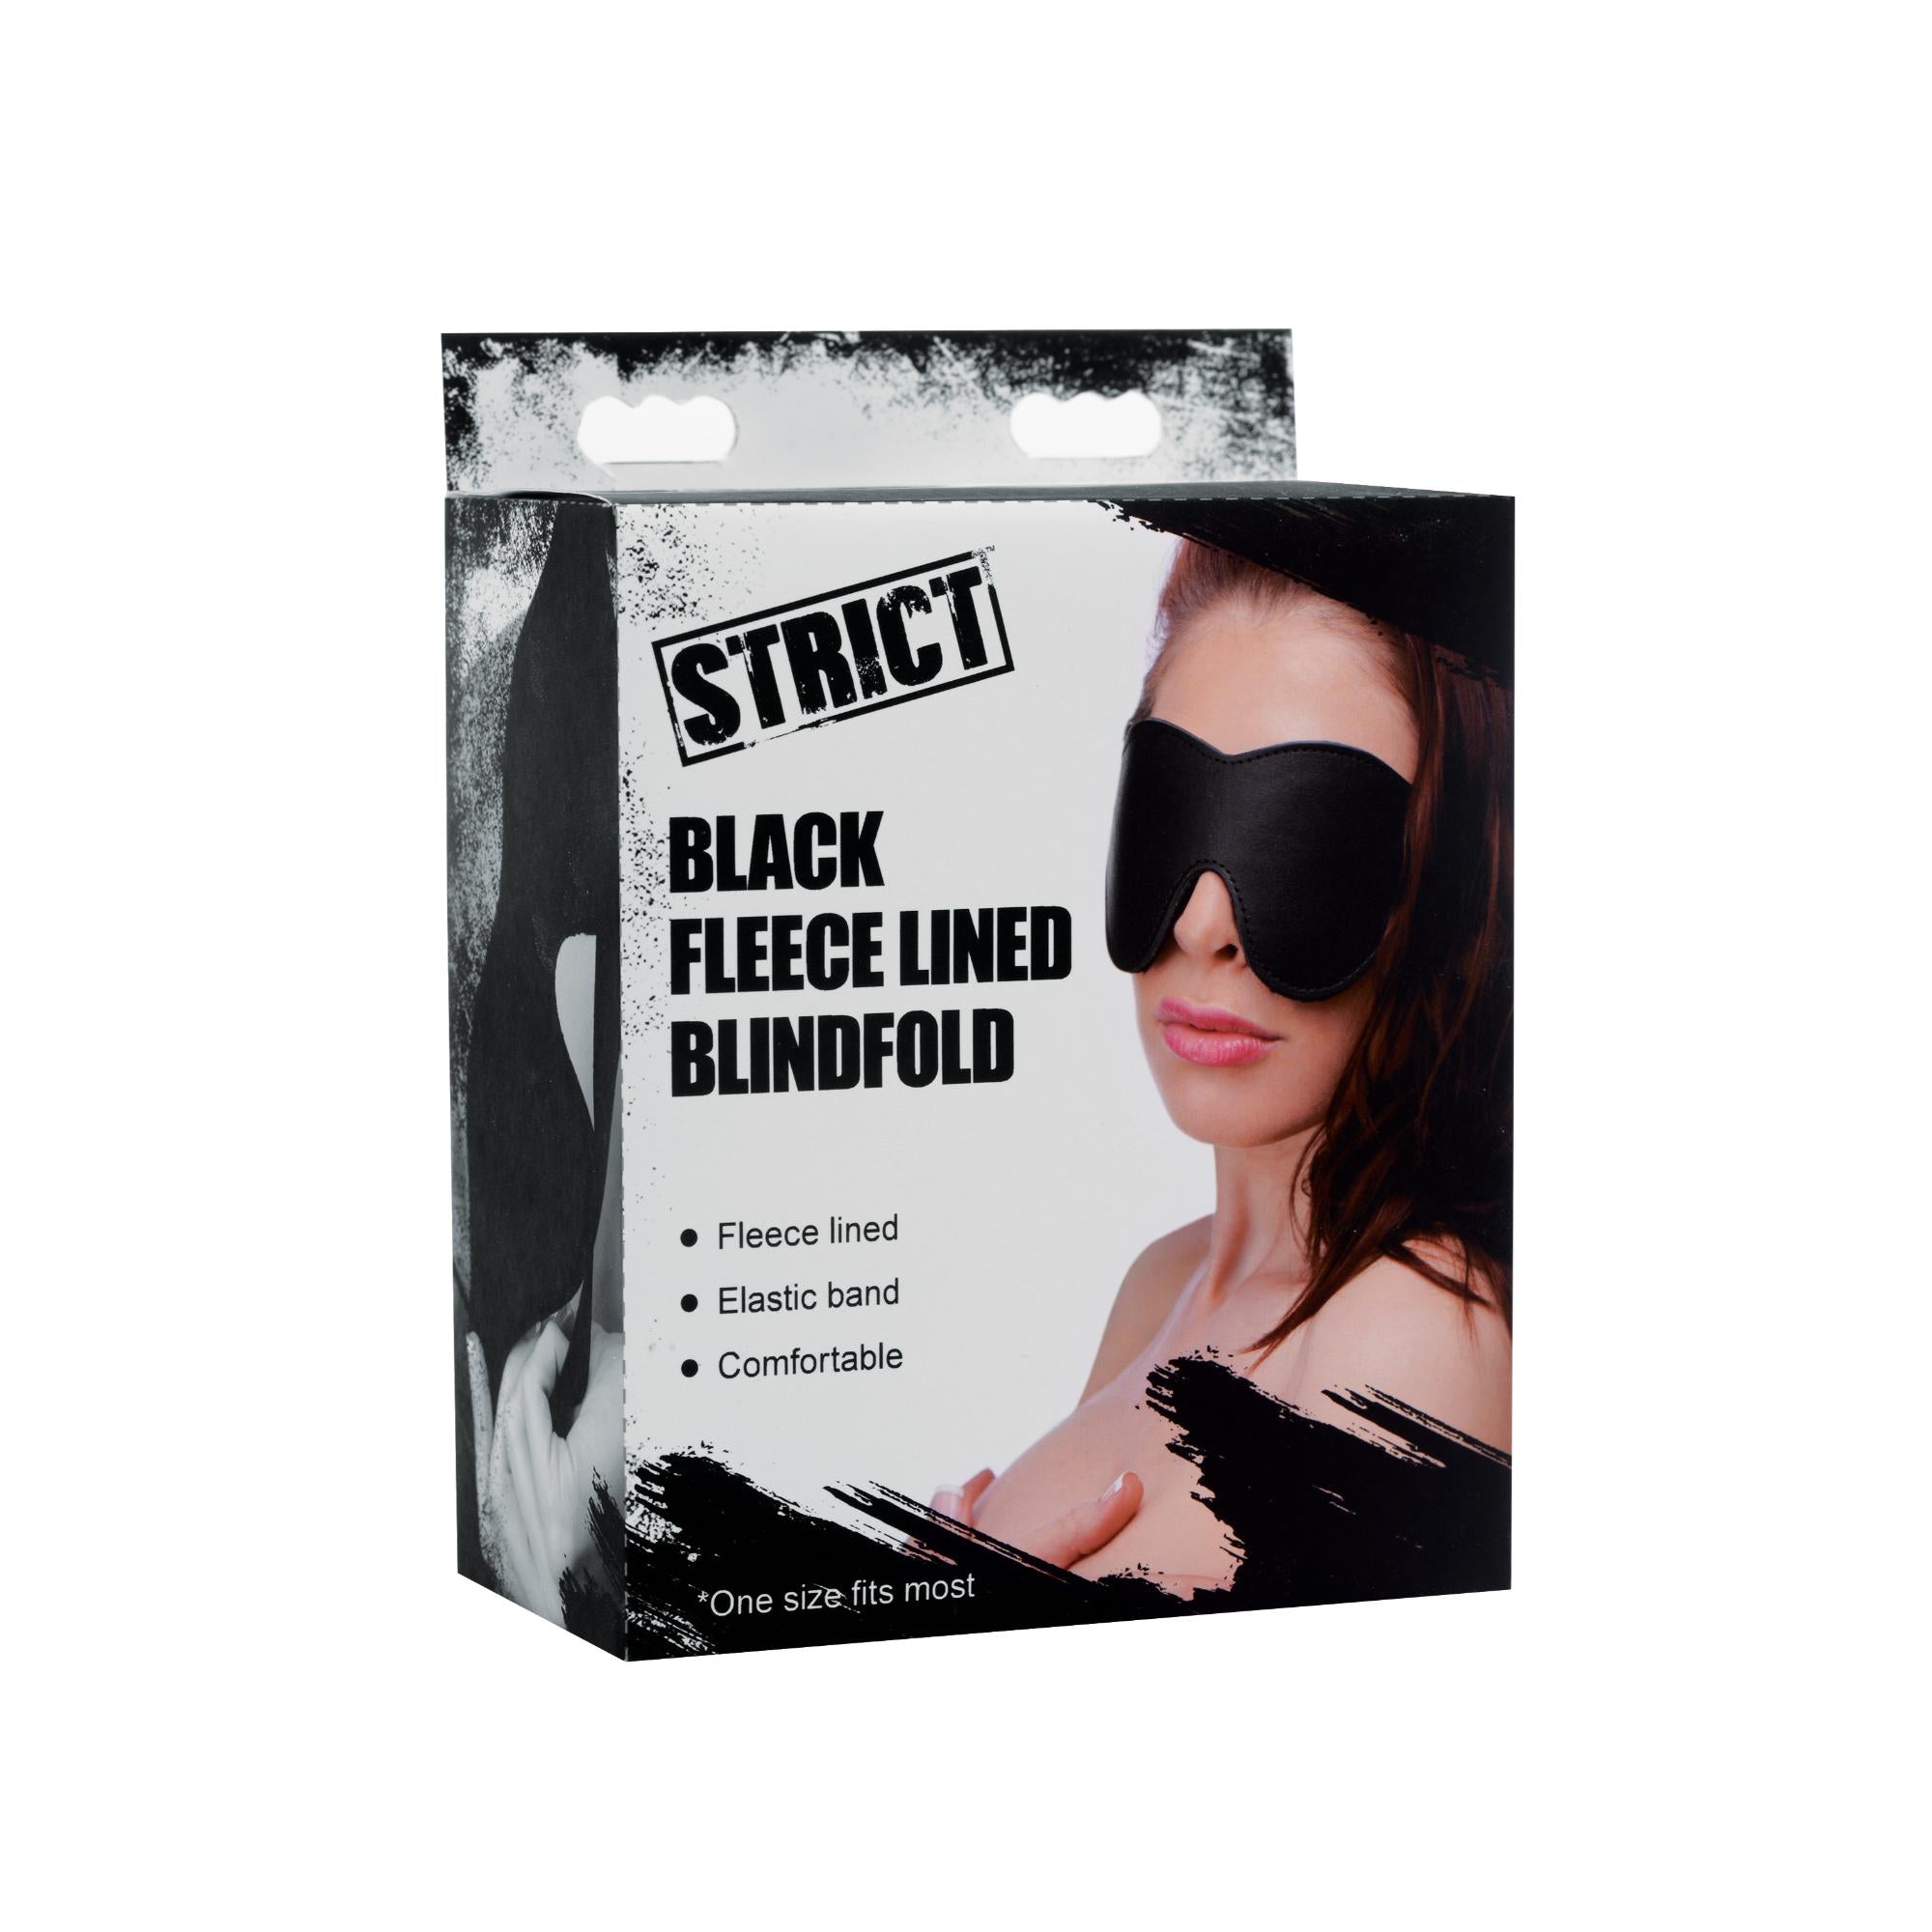 STRICT Black Fleece Lined Blindfold